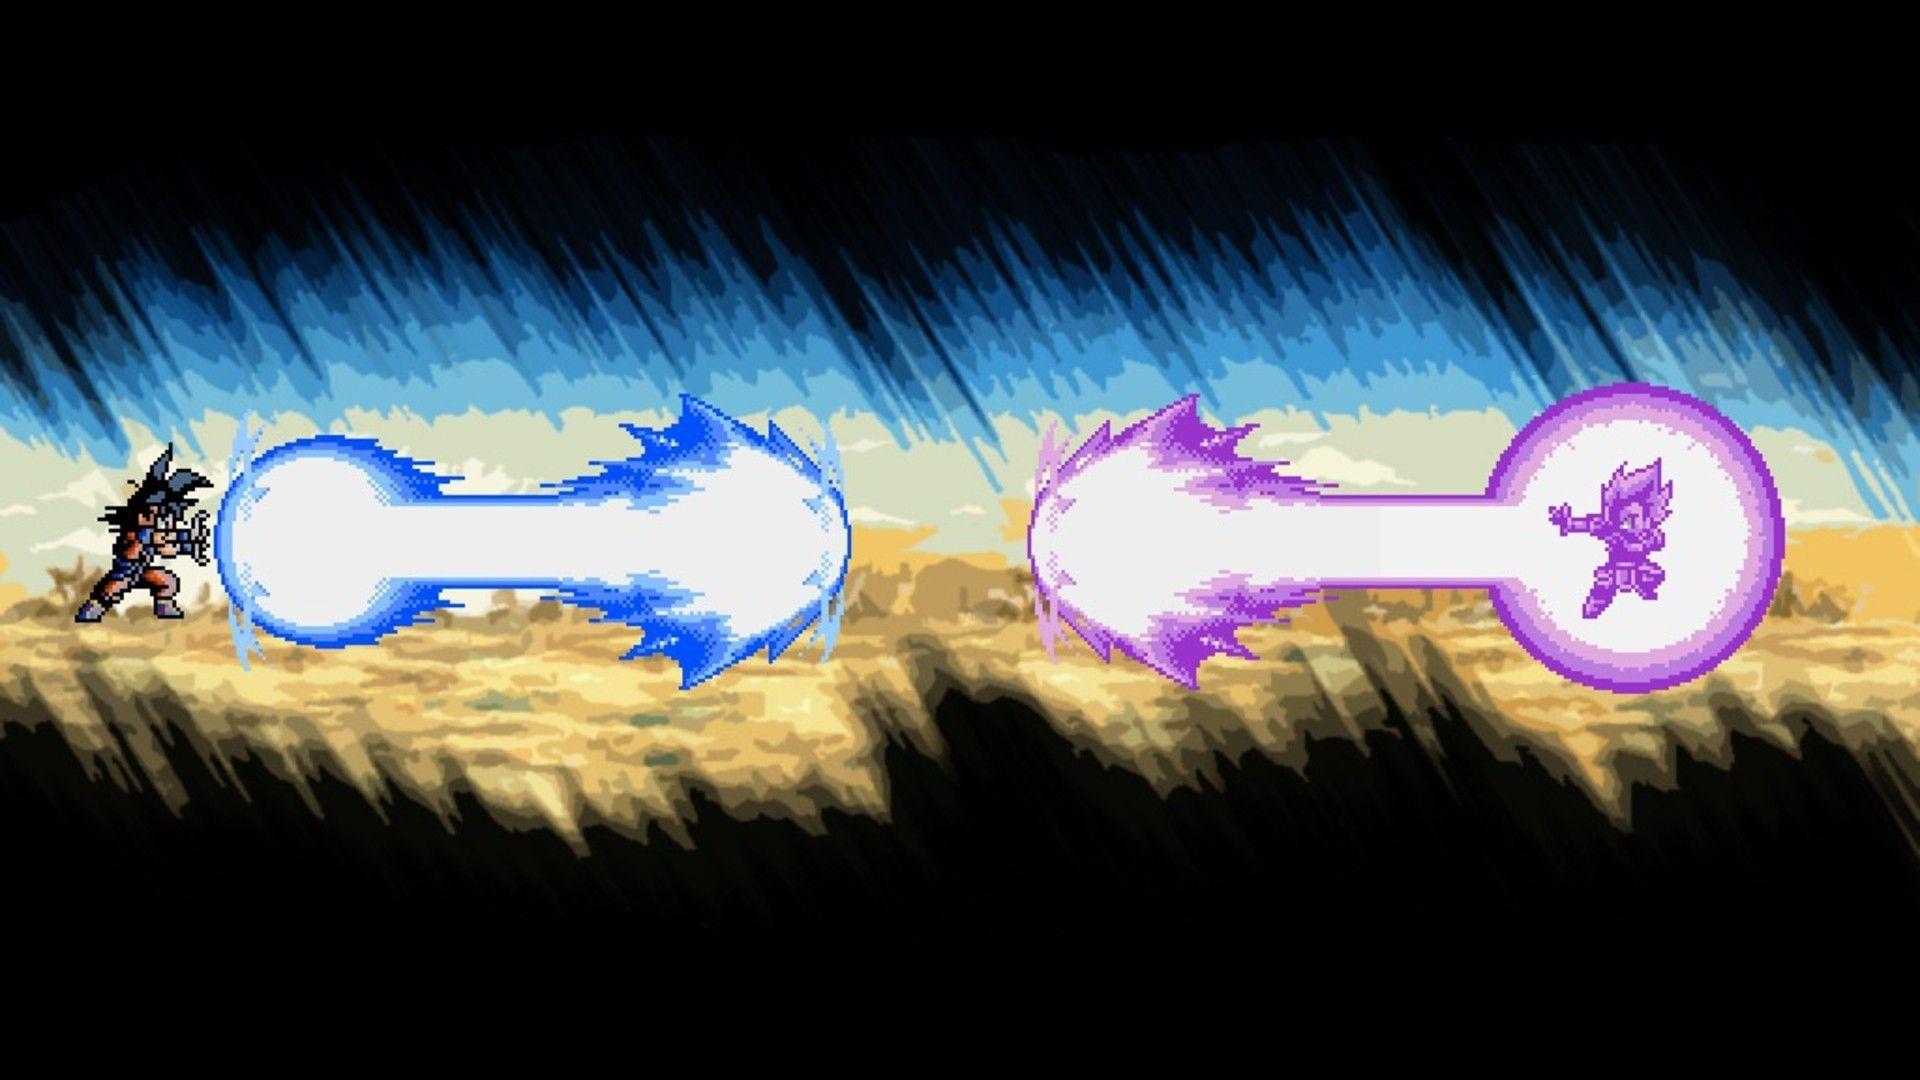 Vegeta vs Goku 8 bits